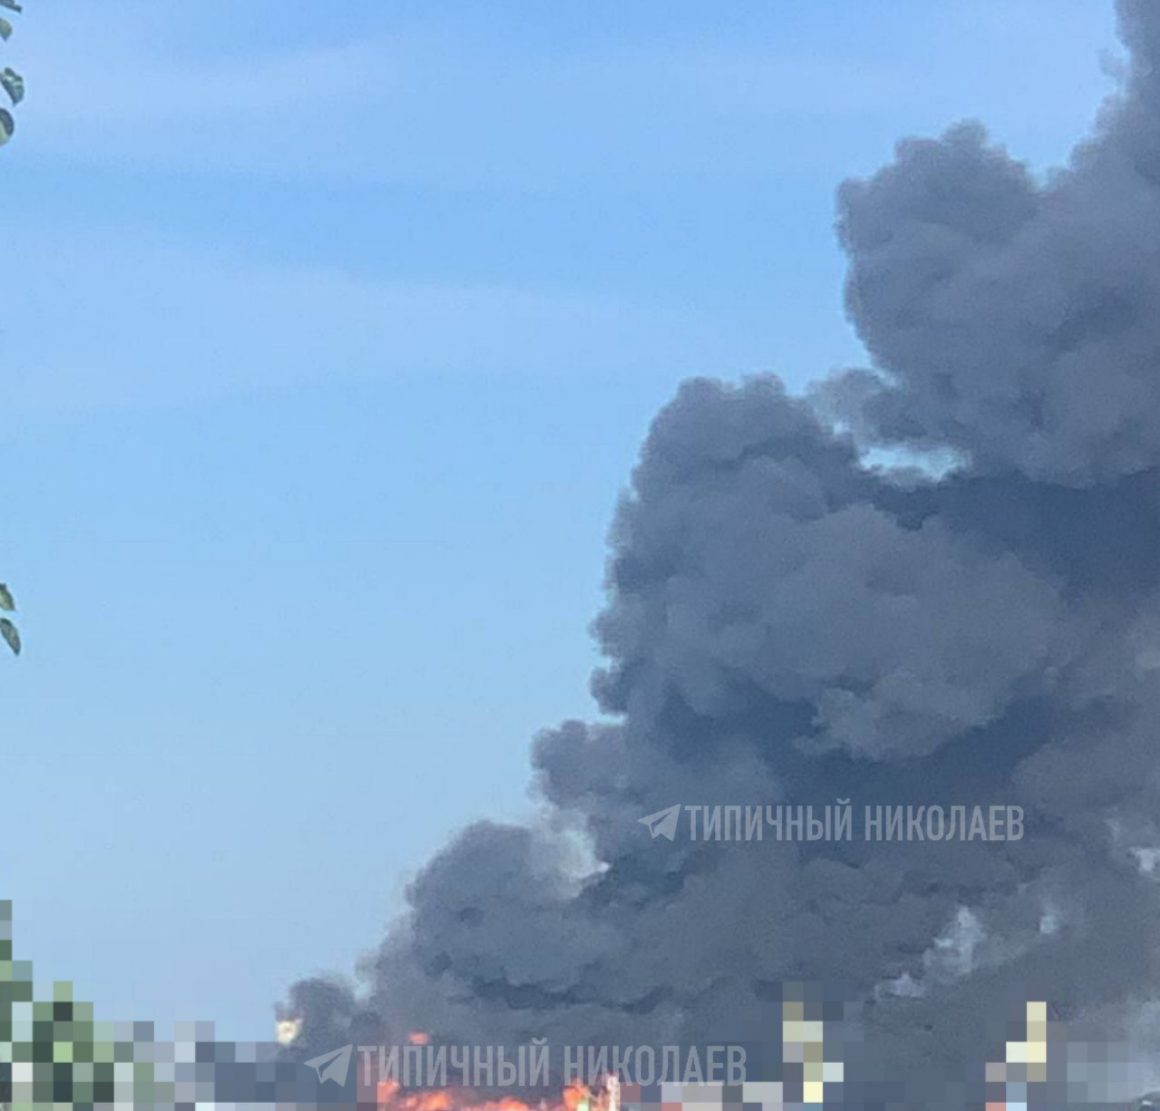 Мощный взрыв в Николаеве: очевидцы сообщают о большом столбе дыма и пожаре (ФОТО) 3